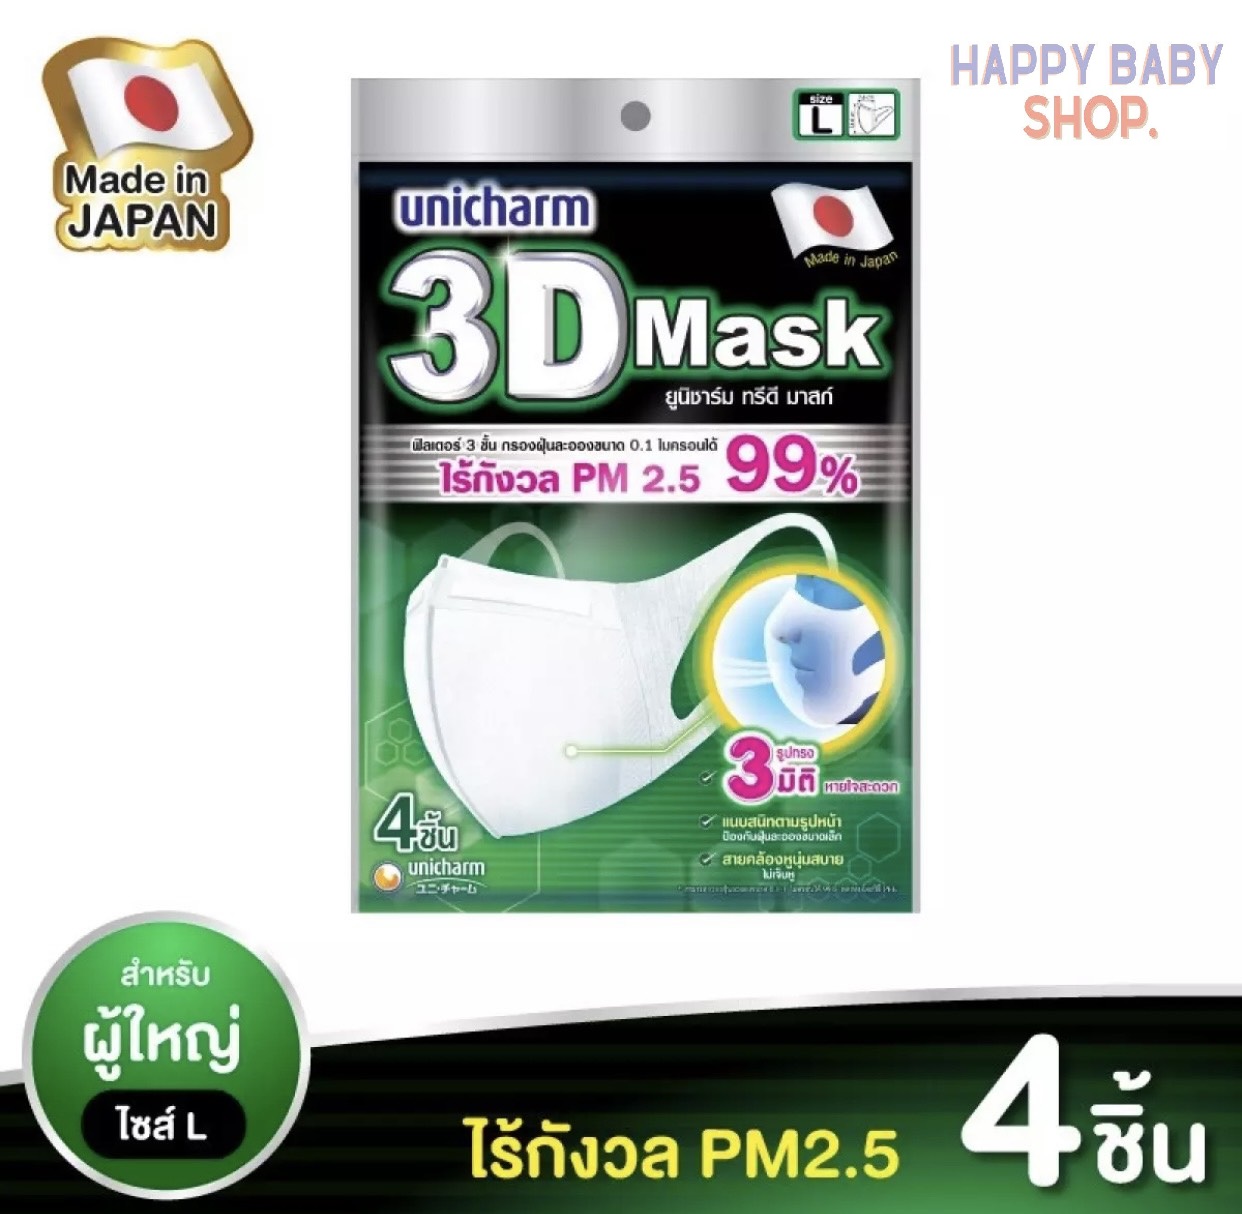 คูปองส่งฟรี3D Mask ทรีดี มาส์ก หน้ากากอนามัยสำหรับผู้ใหญ่ ขนาดL จำนวน 4 ชิ้น ( 1แพ็ค )